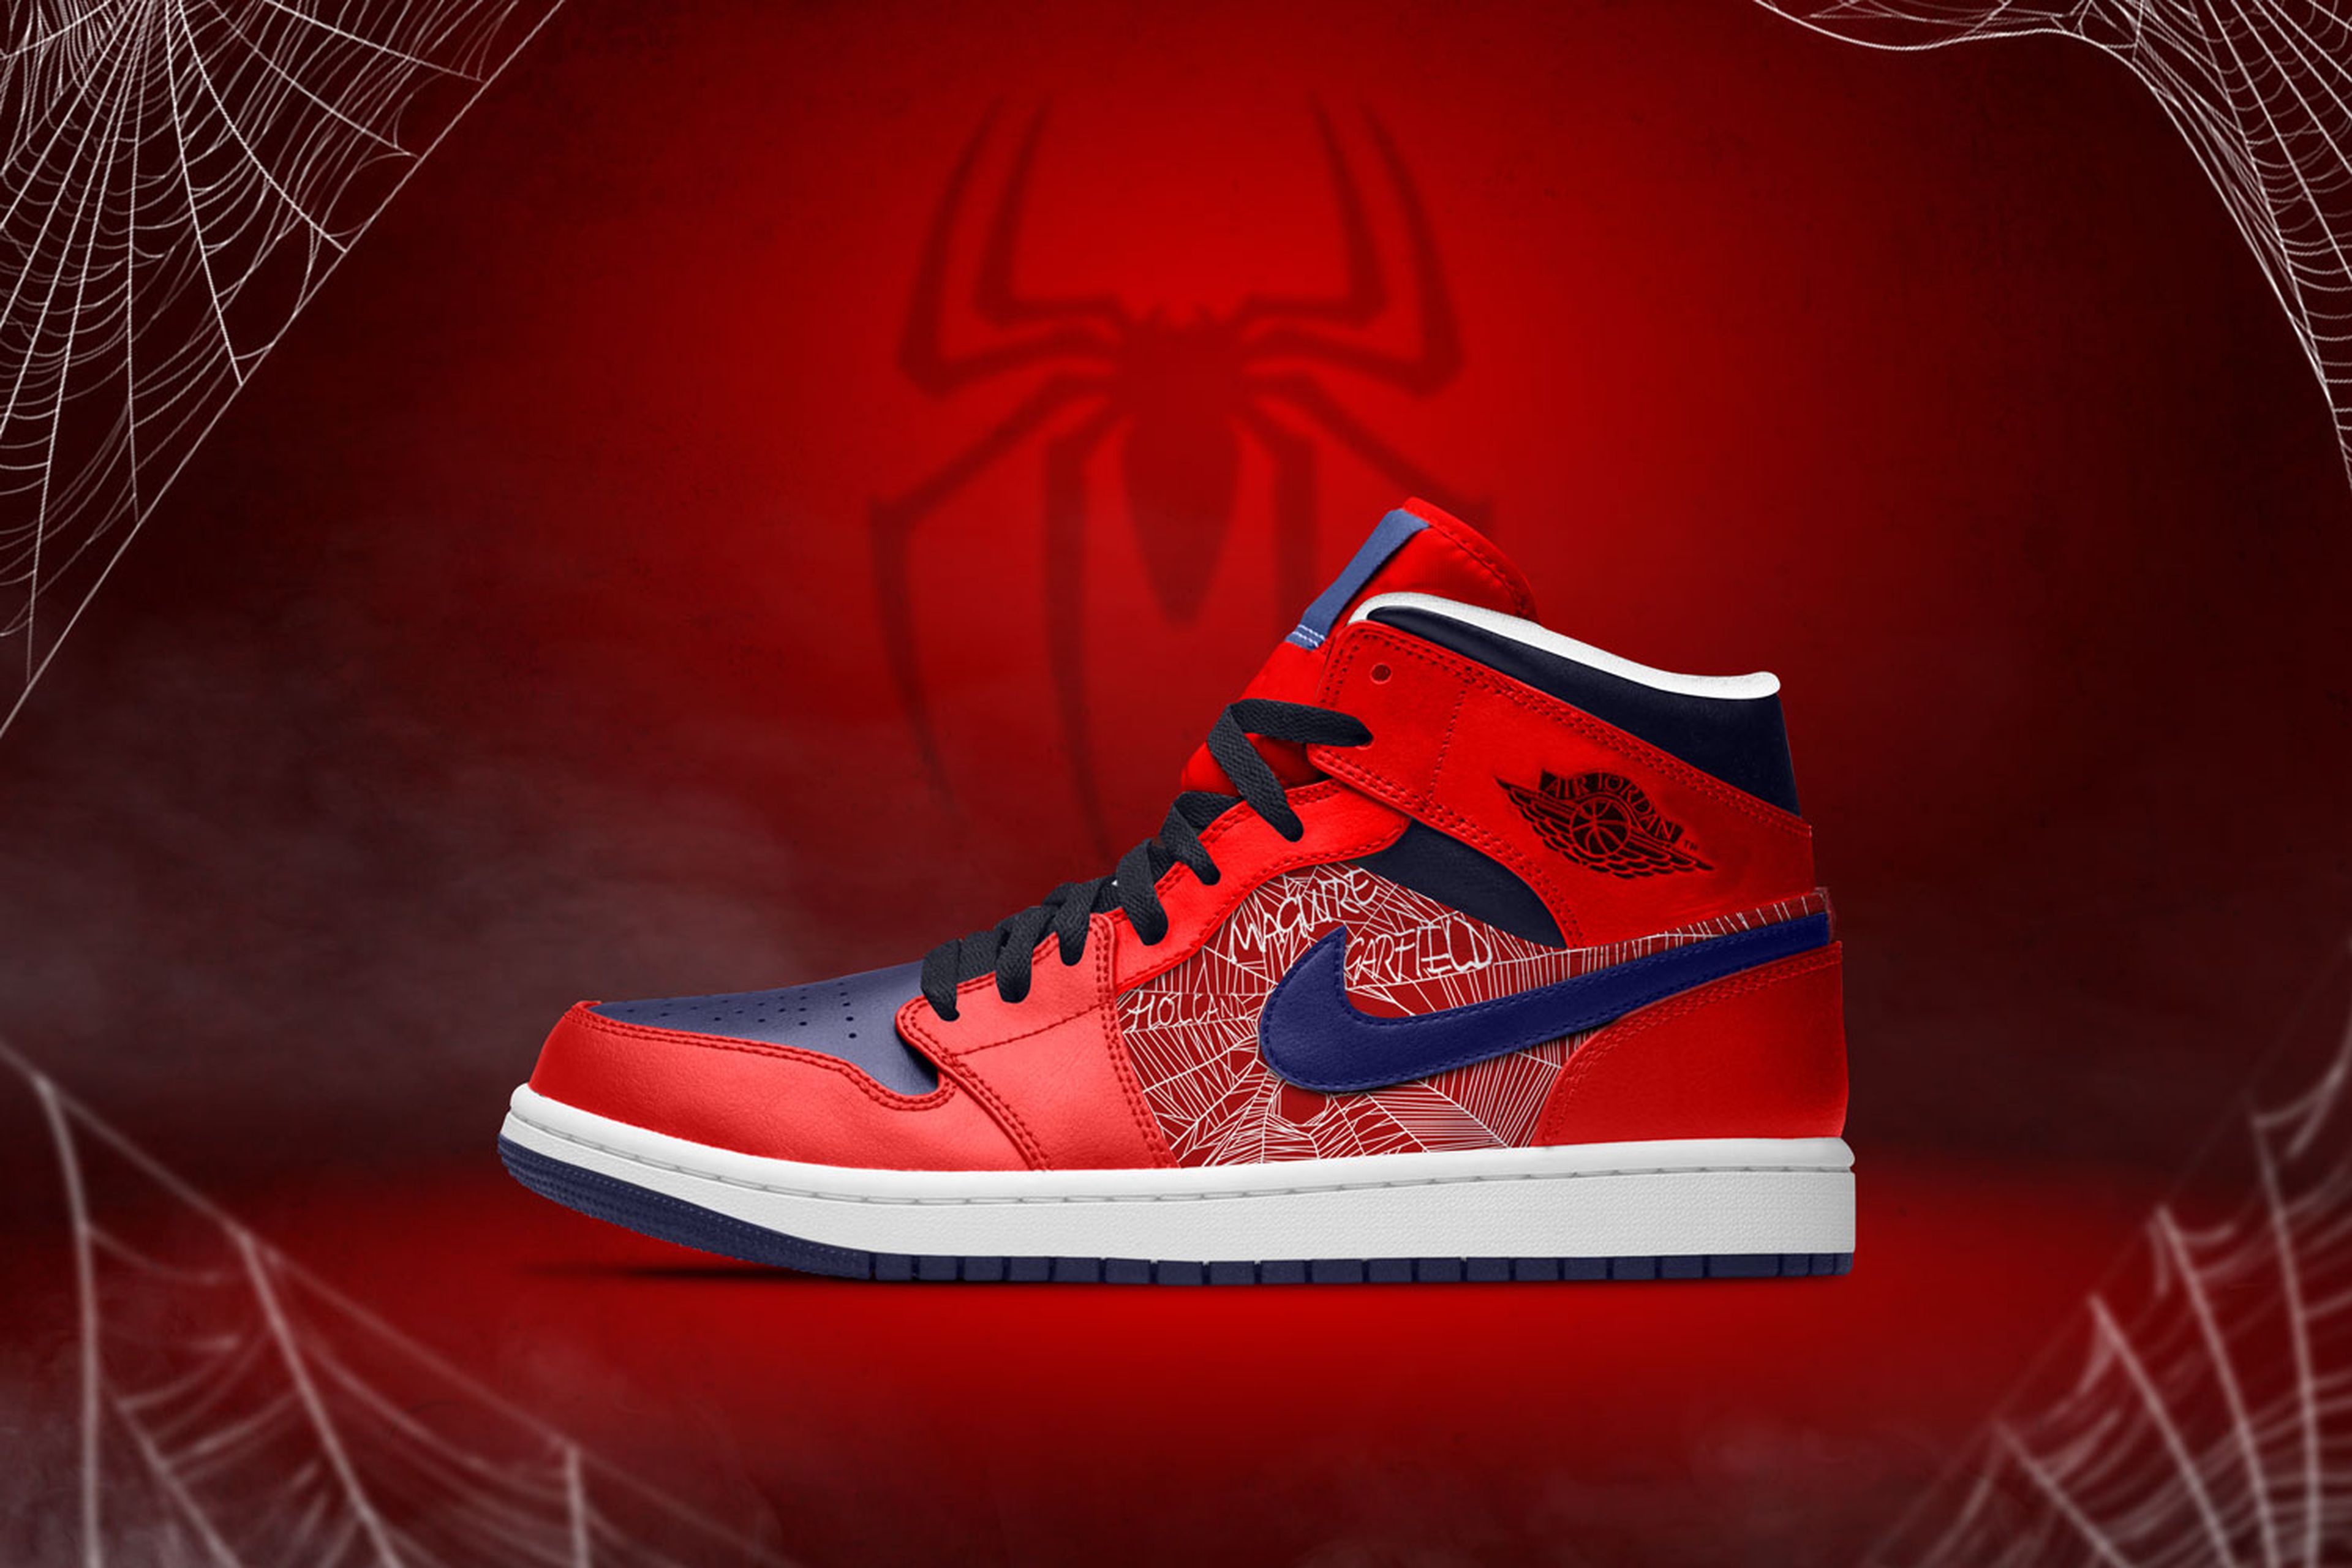 Spider-man, Loki Viuda Negra tienen estas alucinantes zapatillas "custom" en una tienda de Reino Unido | Consolas